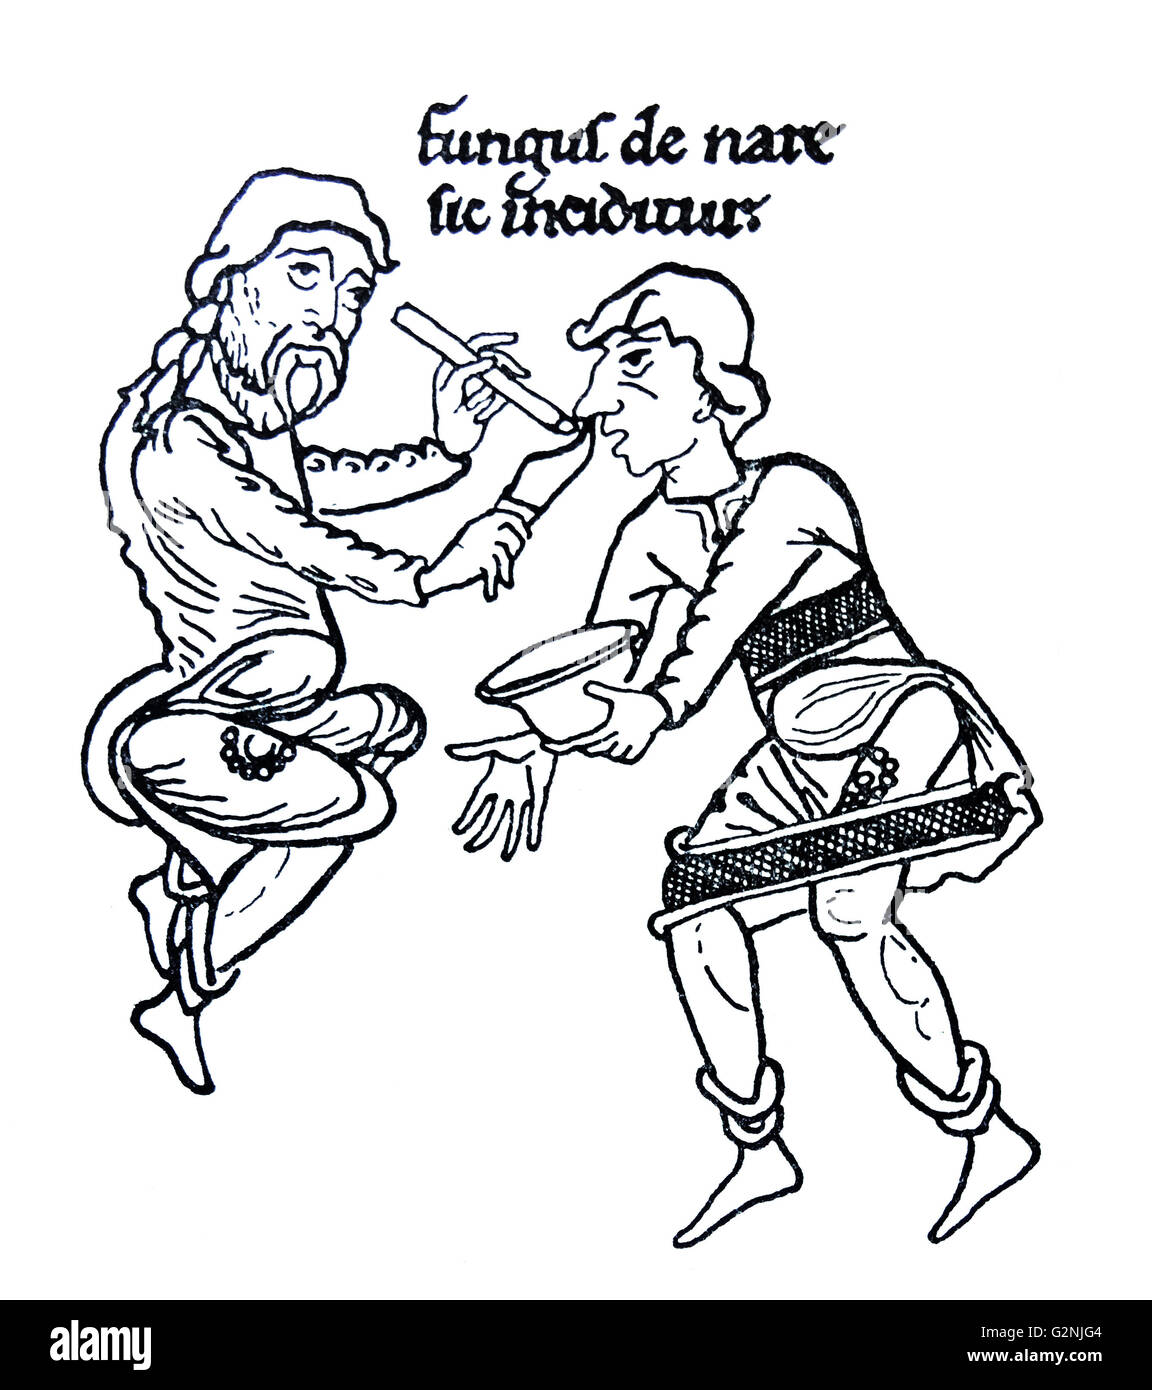 Zeichnung von der mittelalterlichen Behandlung einer nasalen Bedrängnis. Der Text "Pilz de Nase sic inciditur", das übersetzt "Damit polypus aus der Nase' geschnitten wird. Vom 12. Jahrhundert Stockfoto